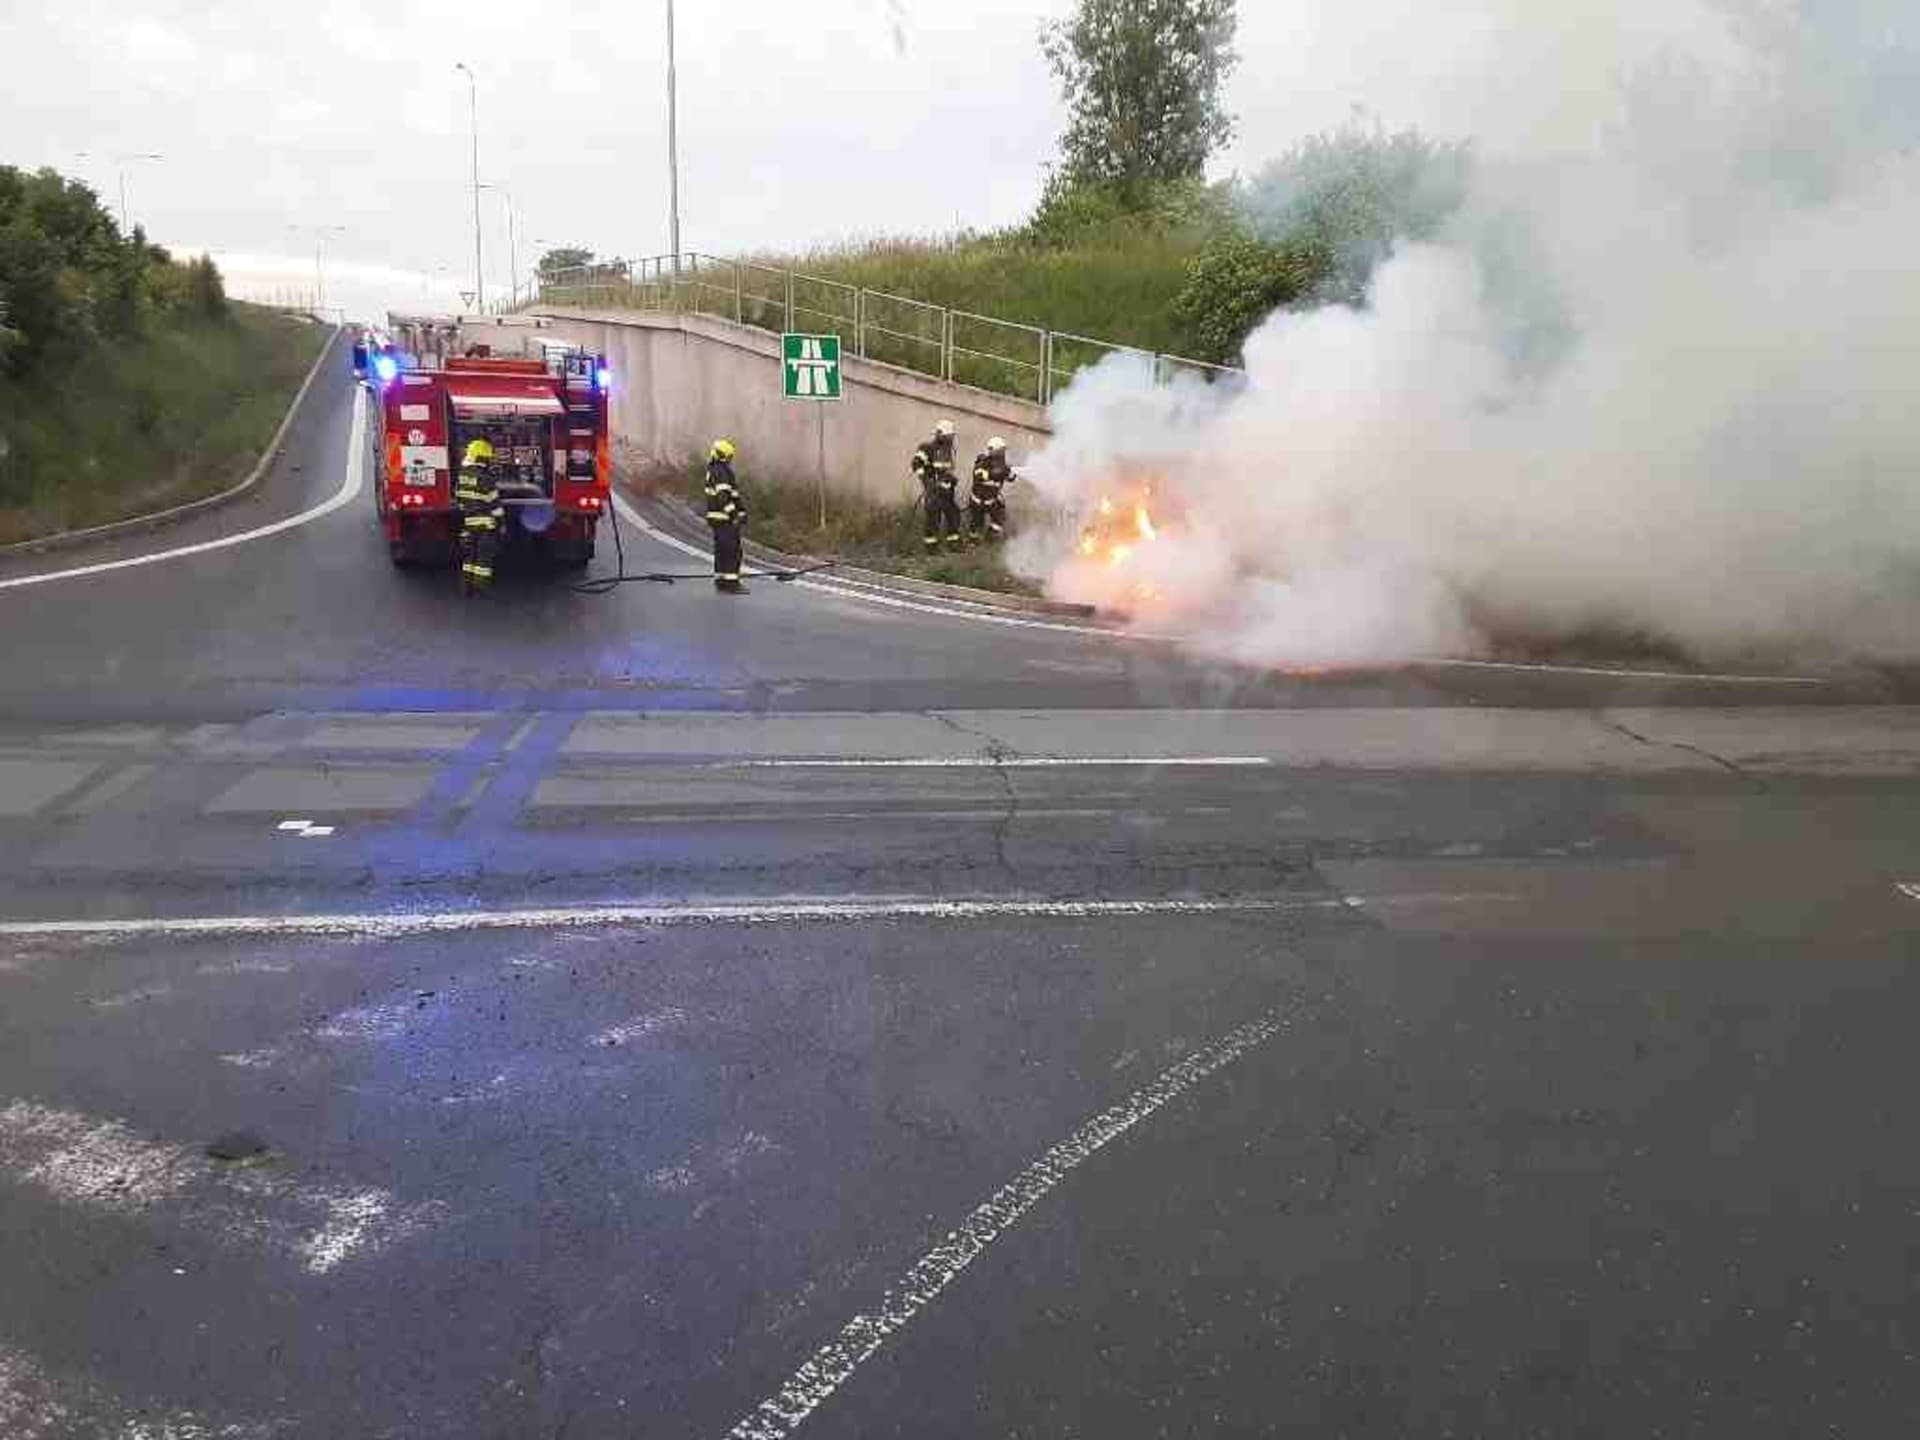 Tragická nehoda se stala na silnici mezi Hněvotínem a Nedvězím na Olomoucku.